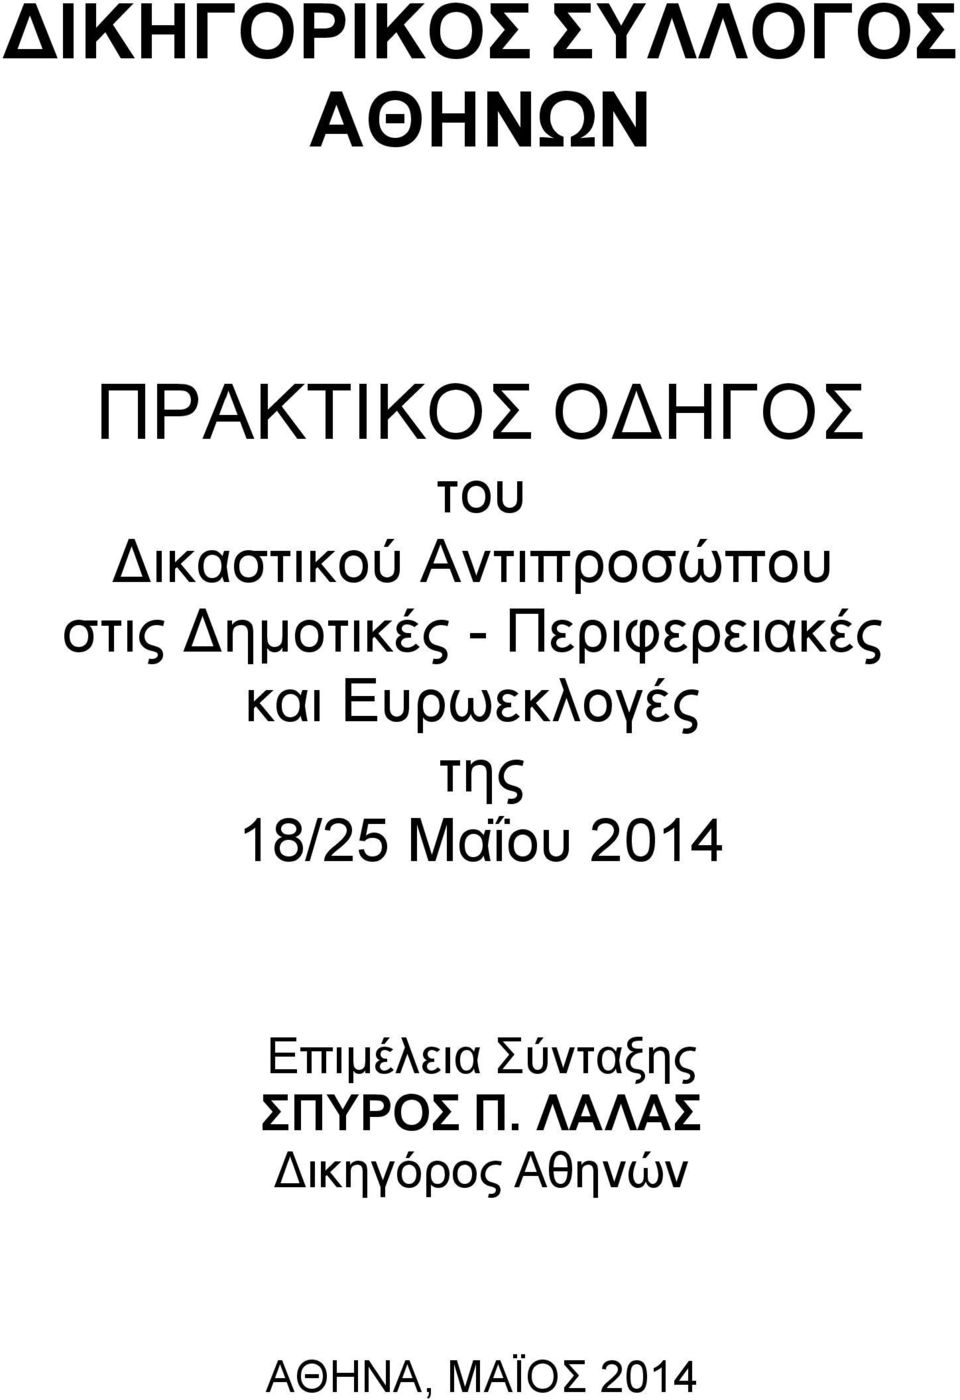 Περιφερειακές και Ευρωεκλογές της 18/25 Μαΐου 2014